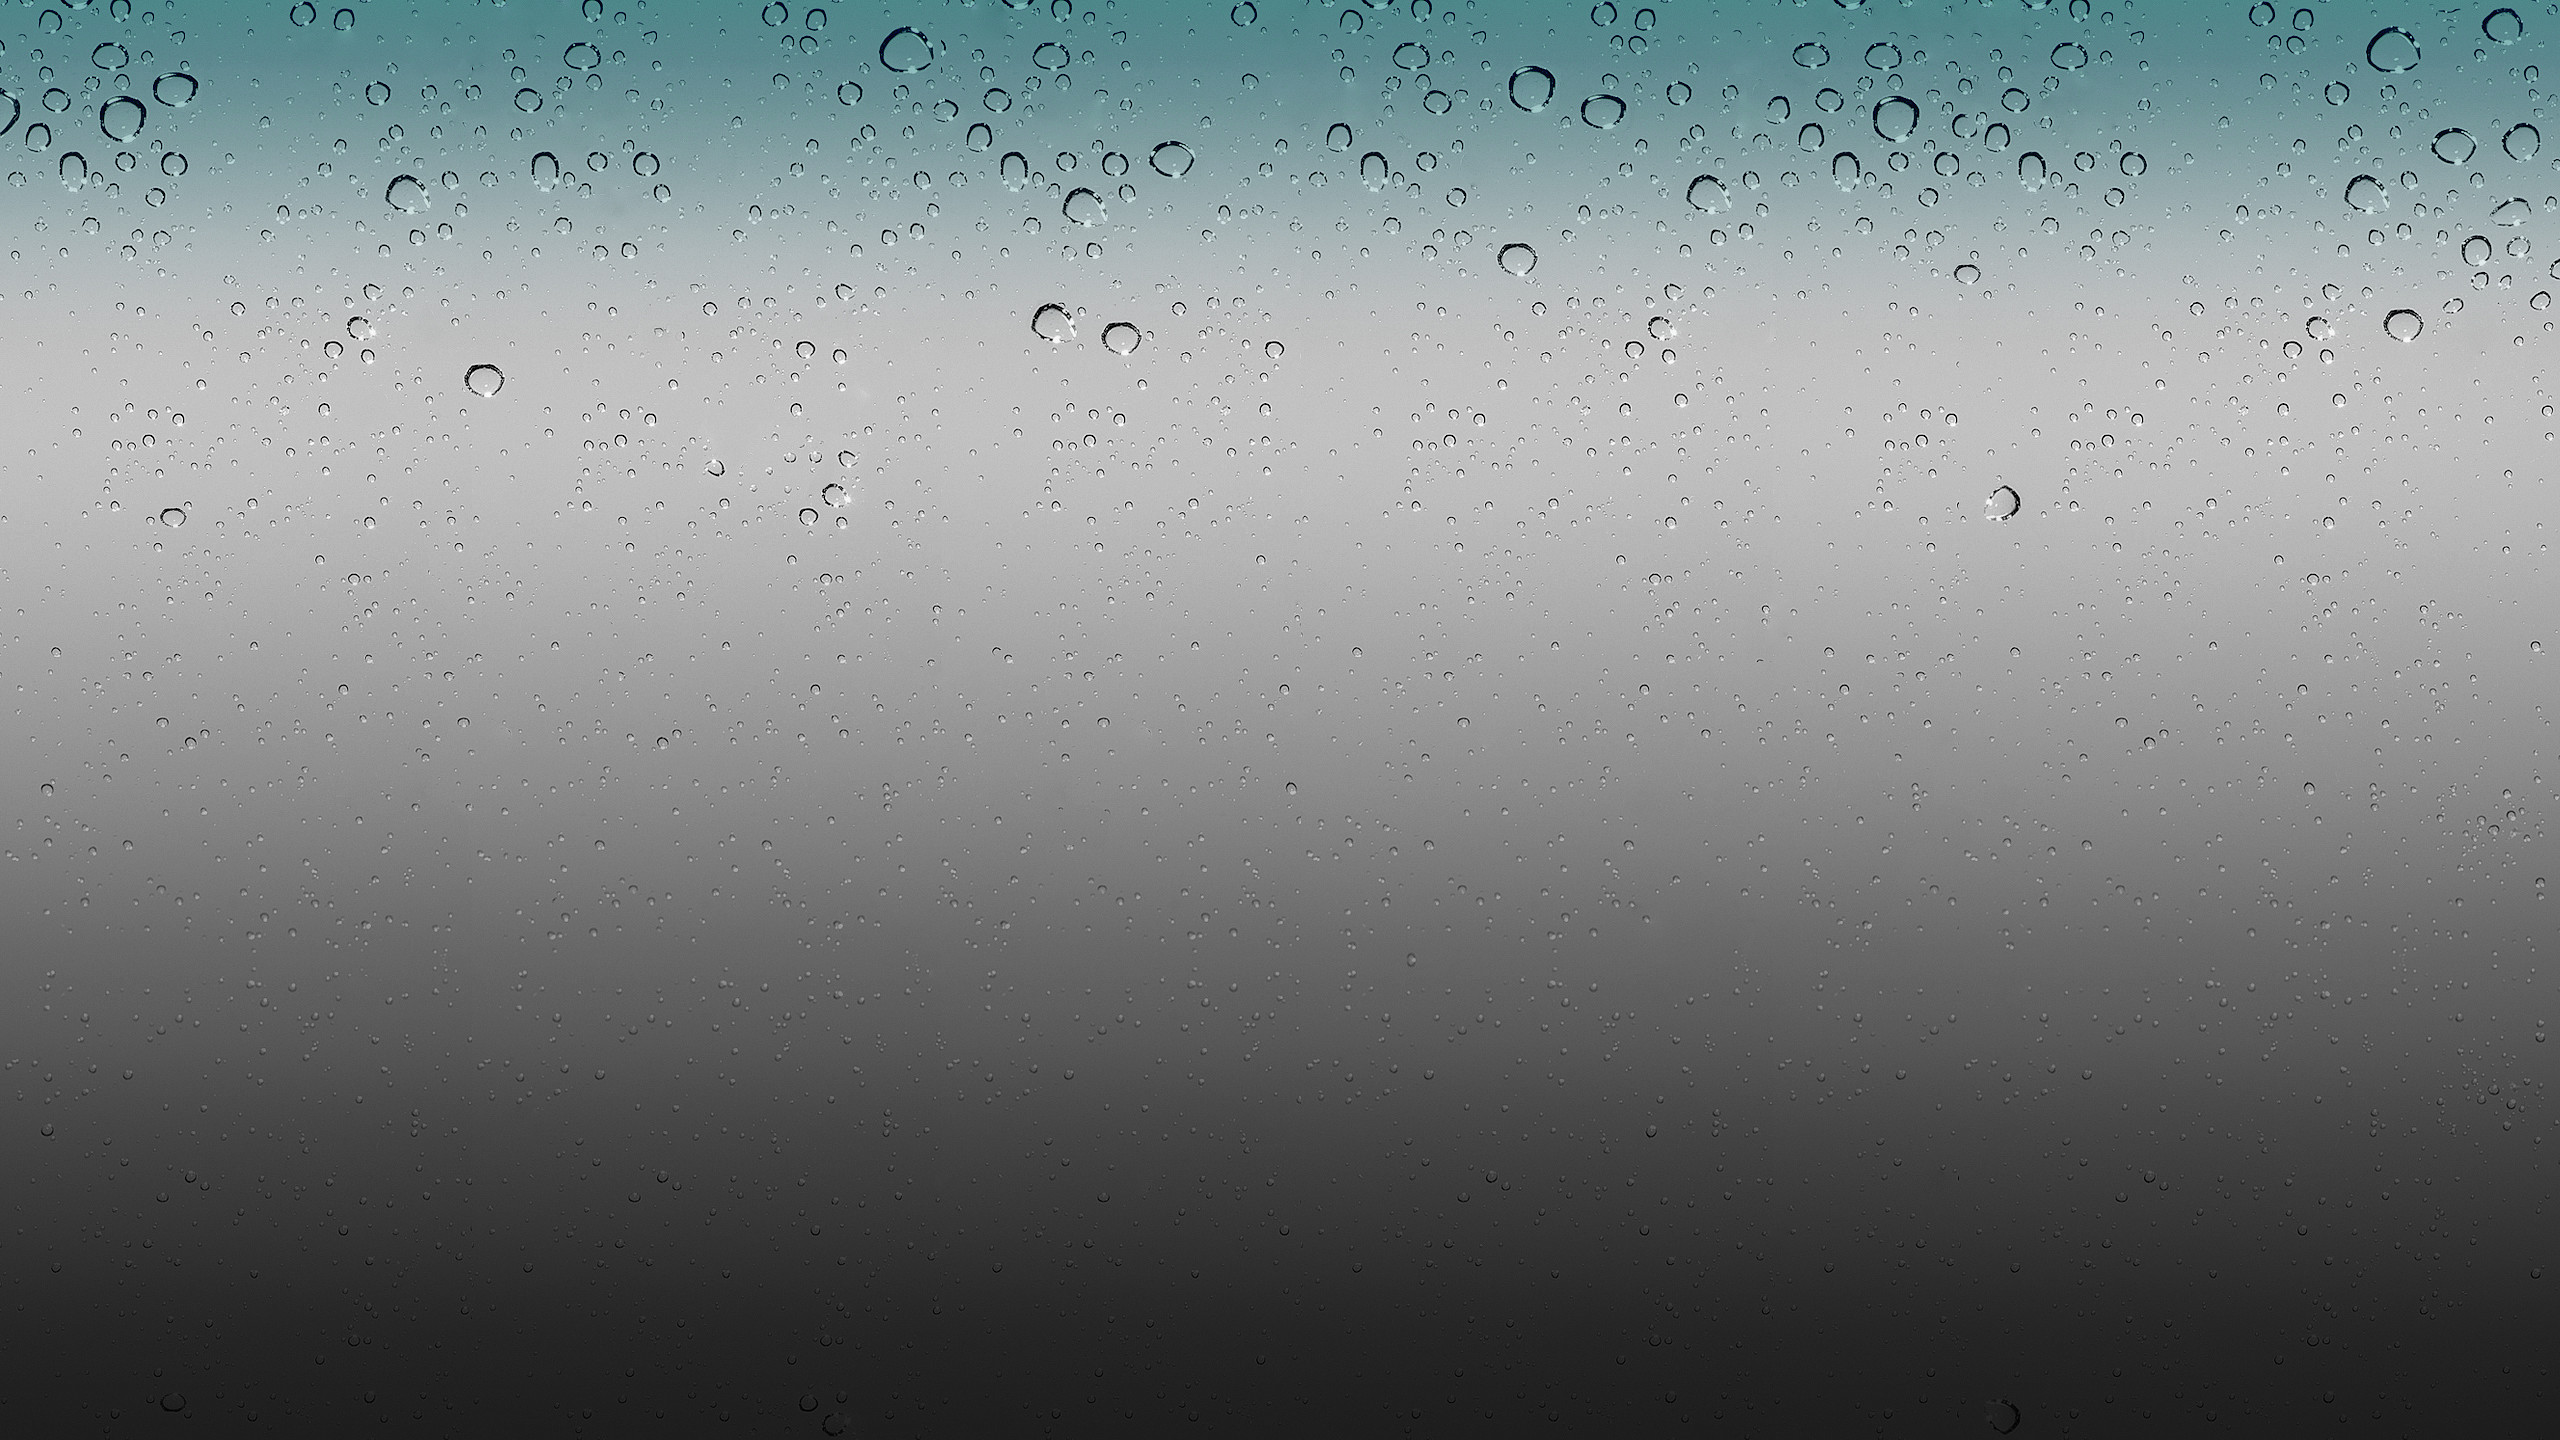 2560x1440 ... IOS Rain Drops Wallpaper HD By Airplane by 0BurN0